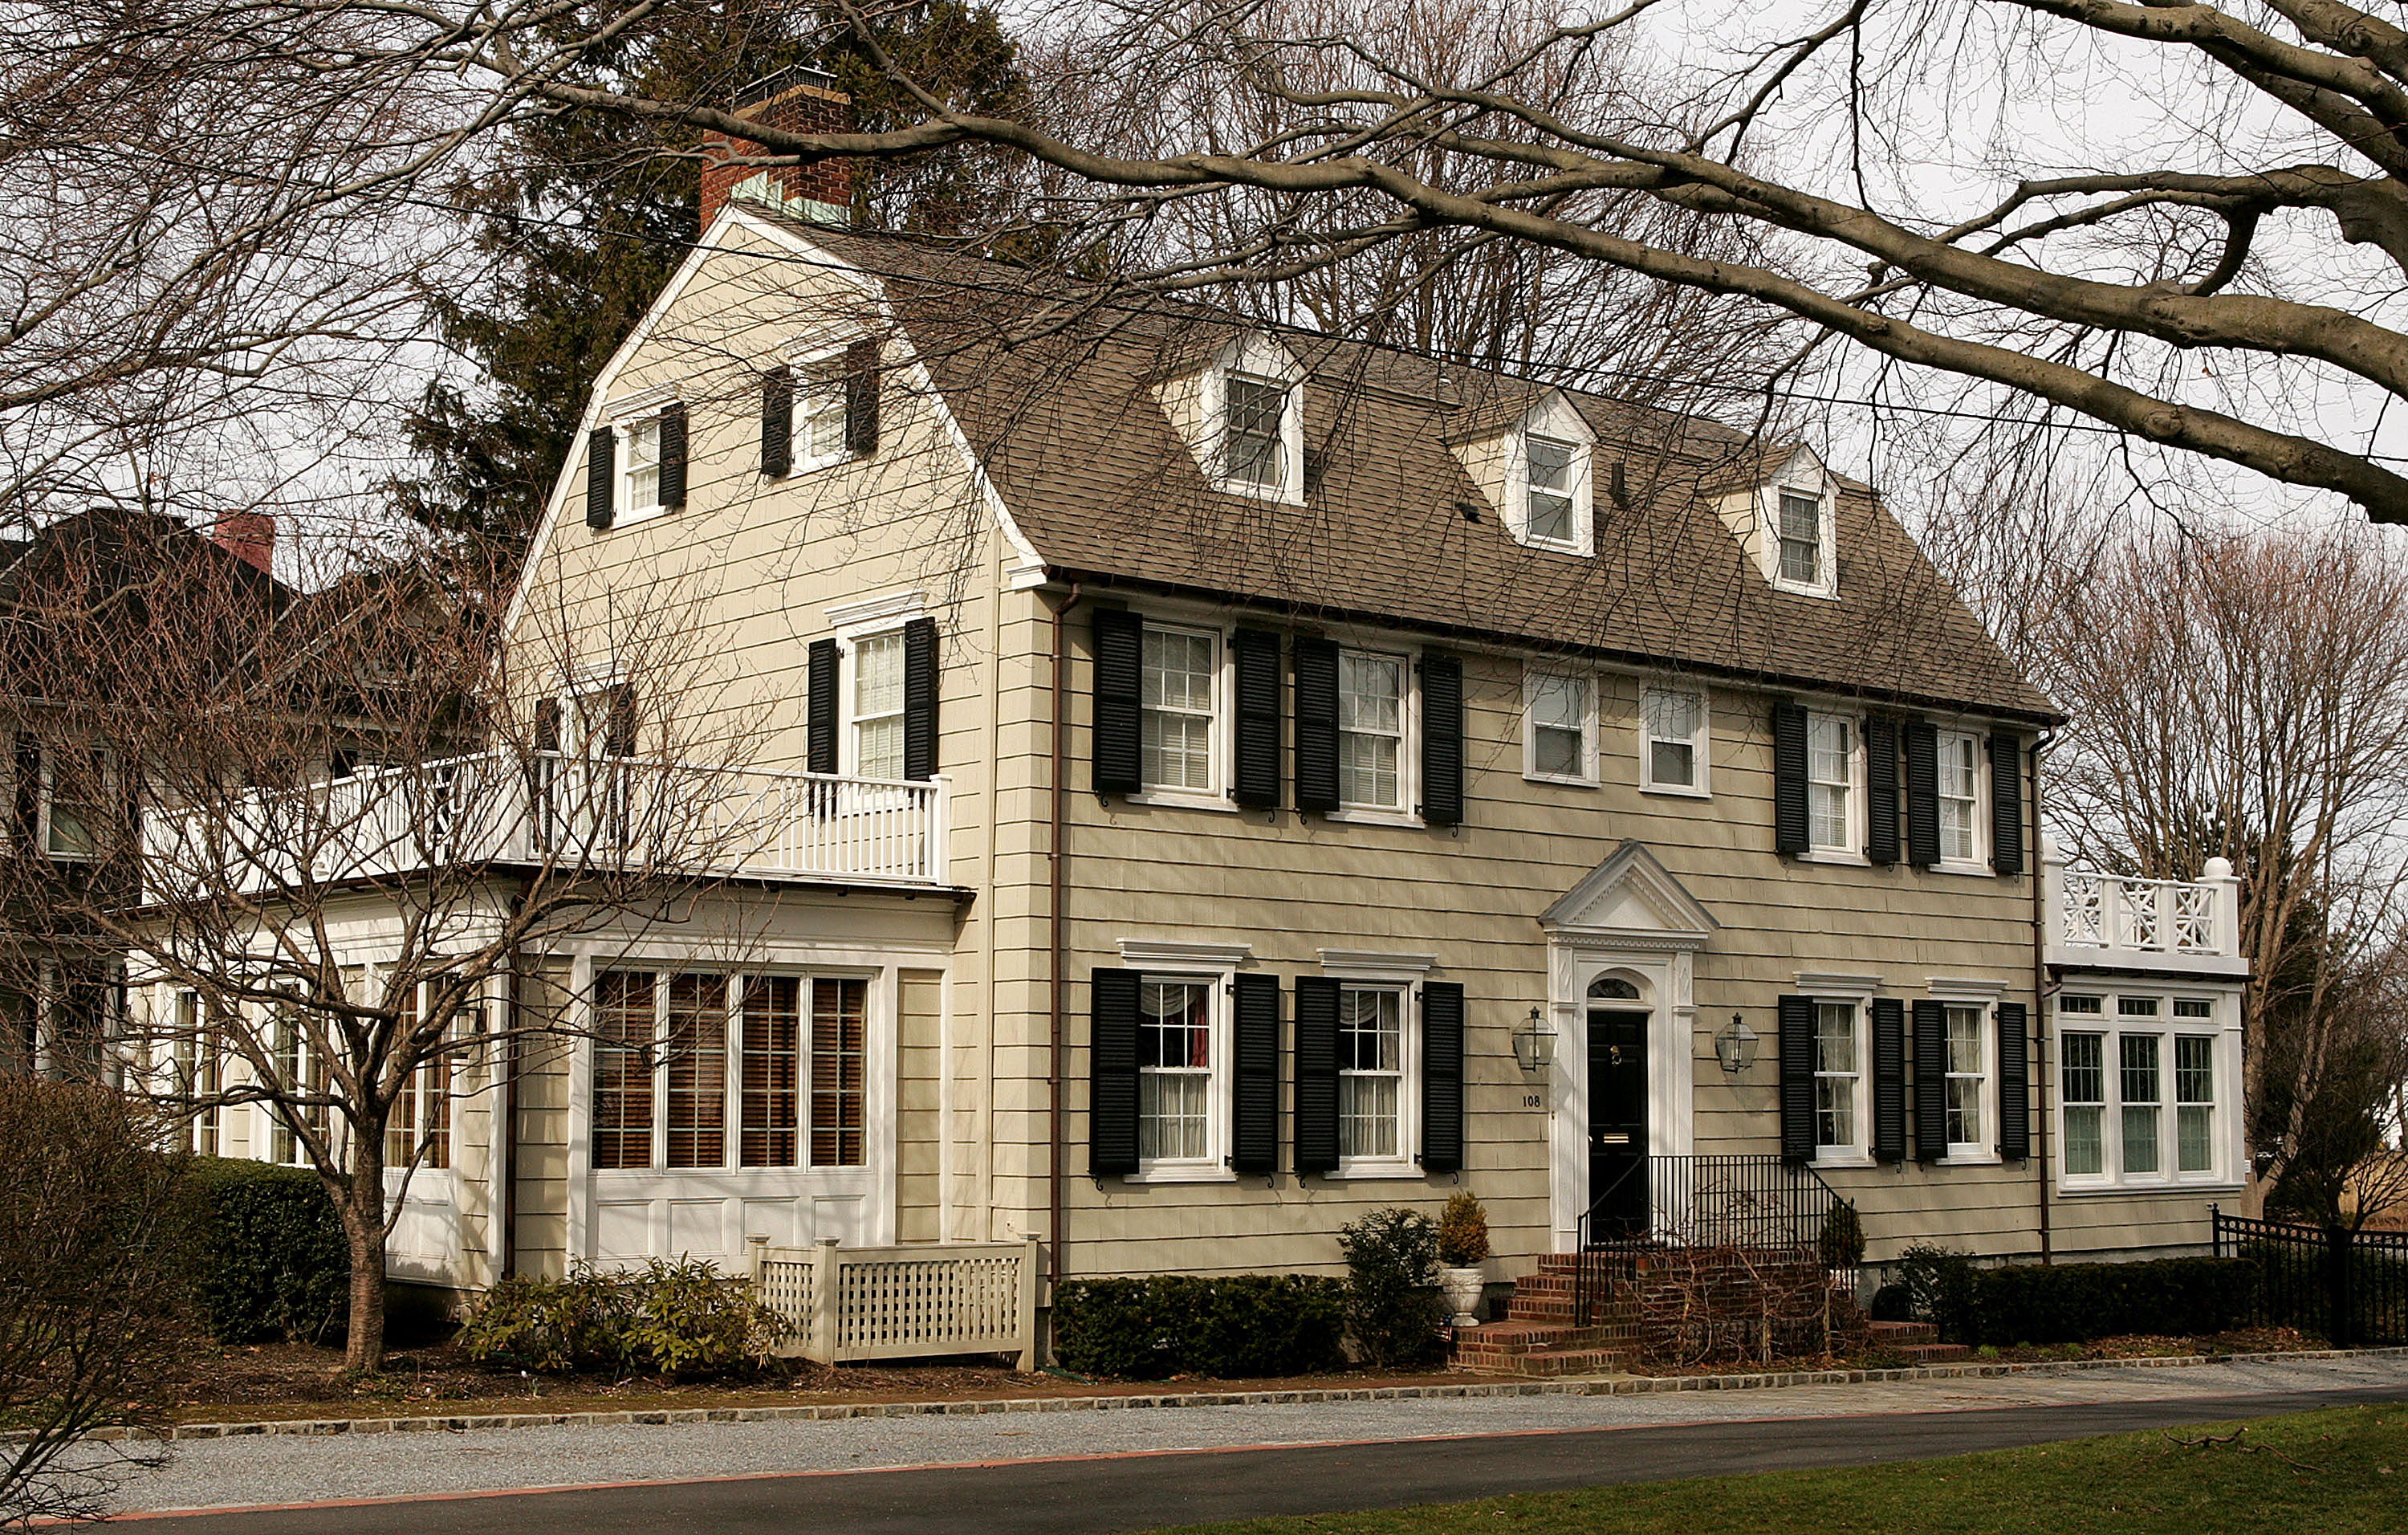 La casa de El Vigilante tiene muchas similitudes con otra casa colonial holandesa a 60 millas al este: la Casa del Horror de Amityville en Long Island, que también llamó la atención internacional por su historia perturbadora